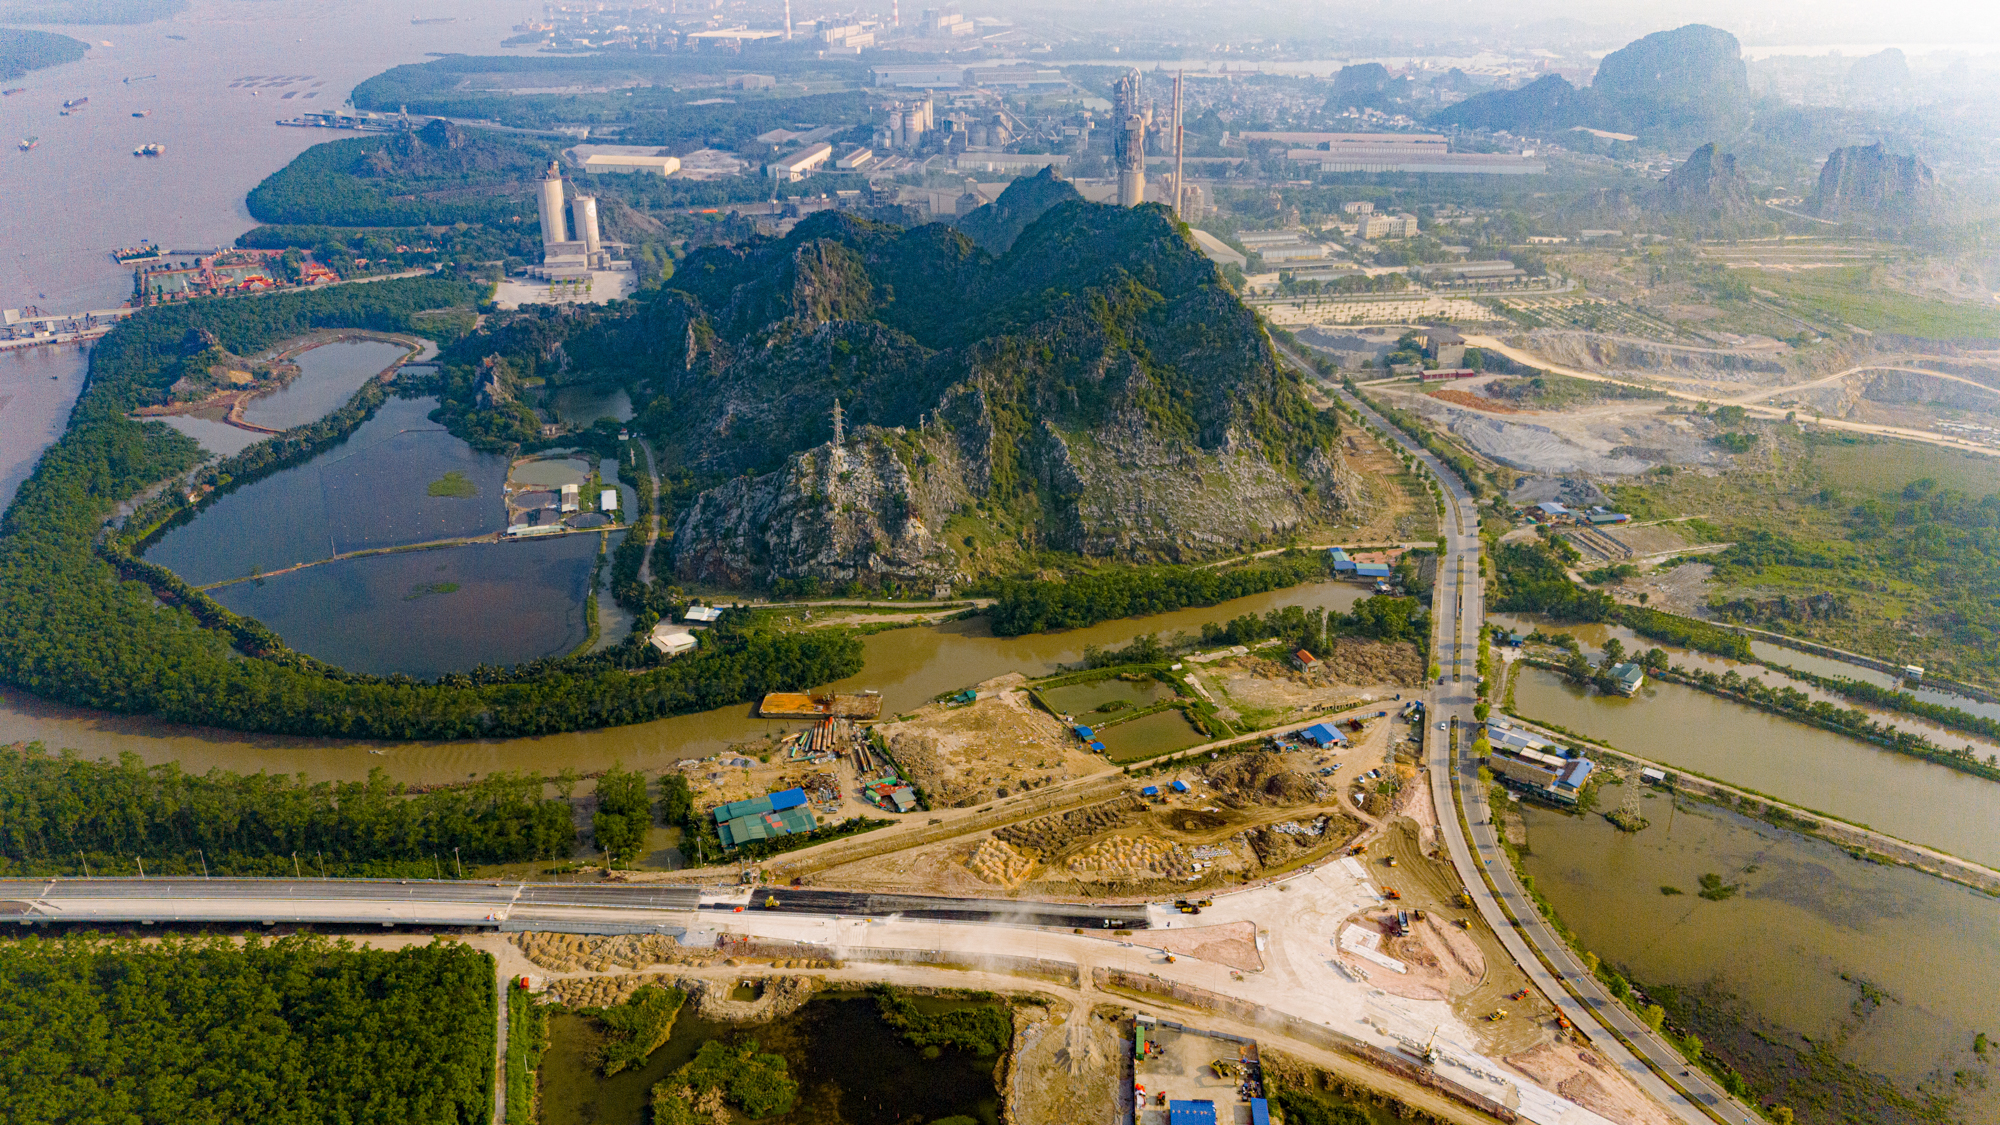 Toàn cảnh khu vực được xây cây cầu trị giá 2.000 tỷ sắp hoàn thành, kết nối Hải Phòng và Quảng Ninh, đưa tuyến phà sông lớn nhất miền Bắc về “nghỉ hưu”.- Ảnh 2.